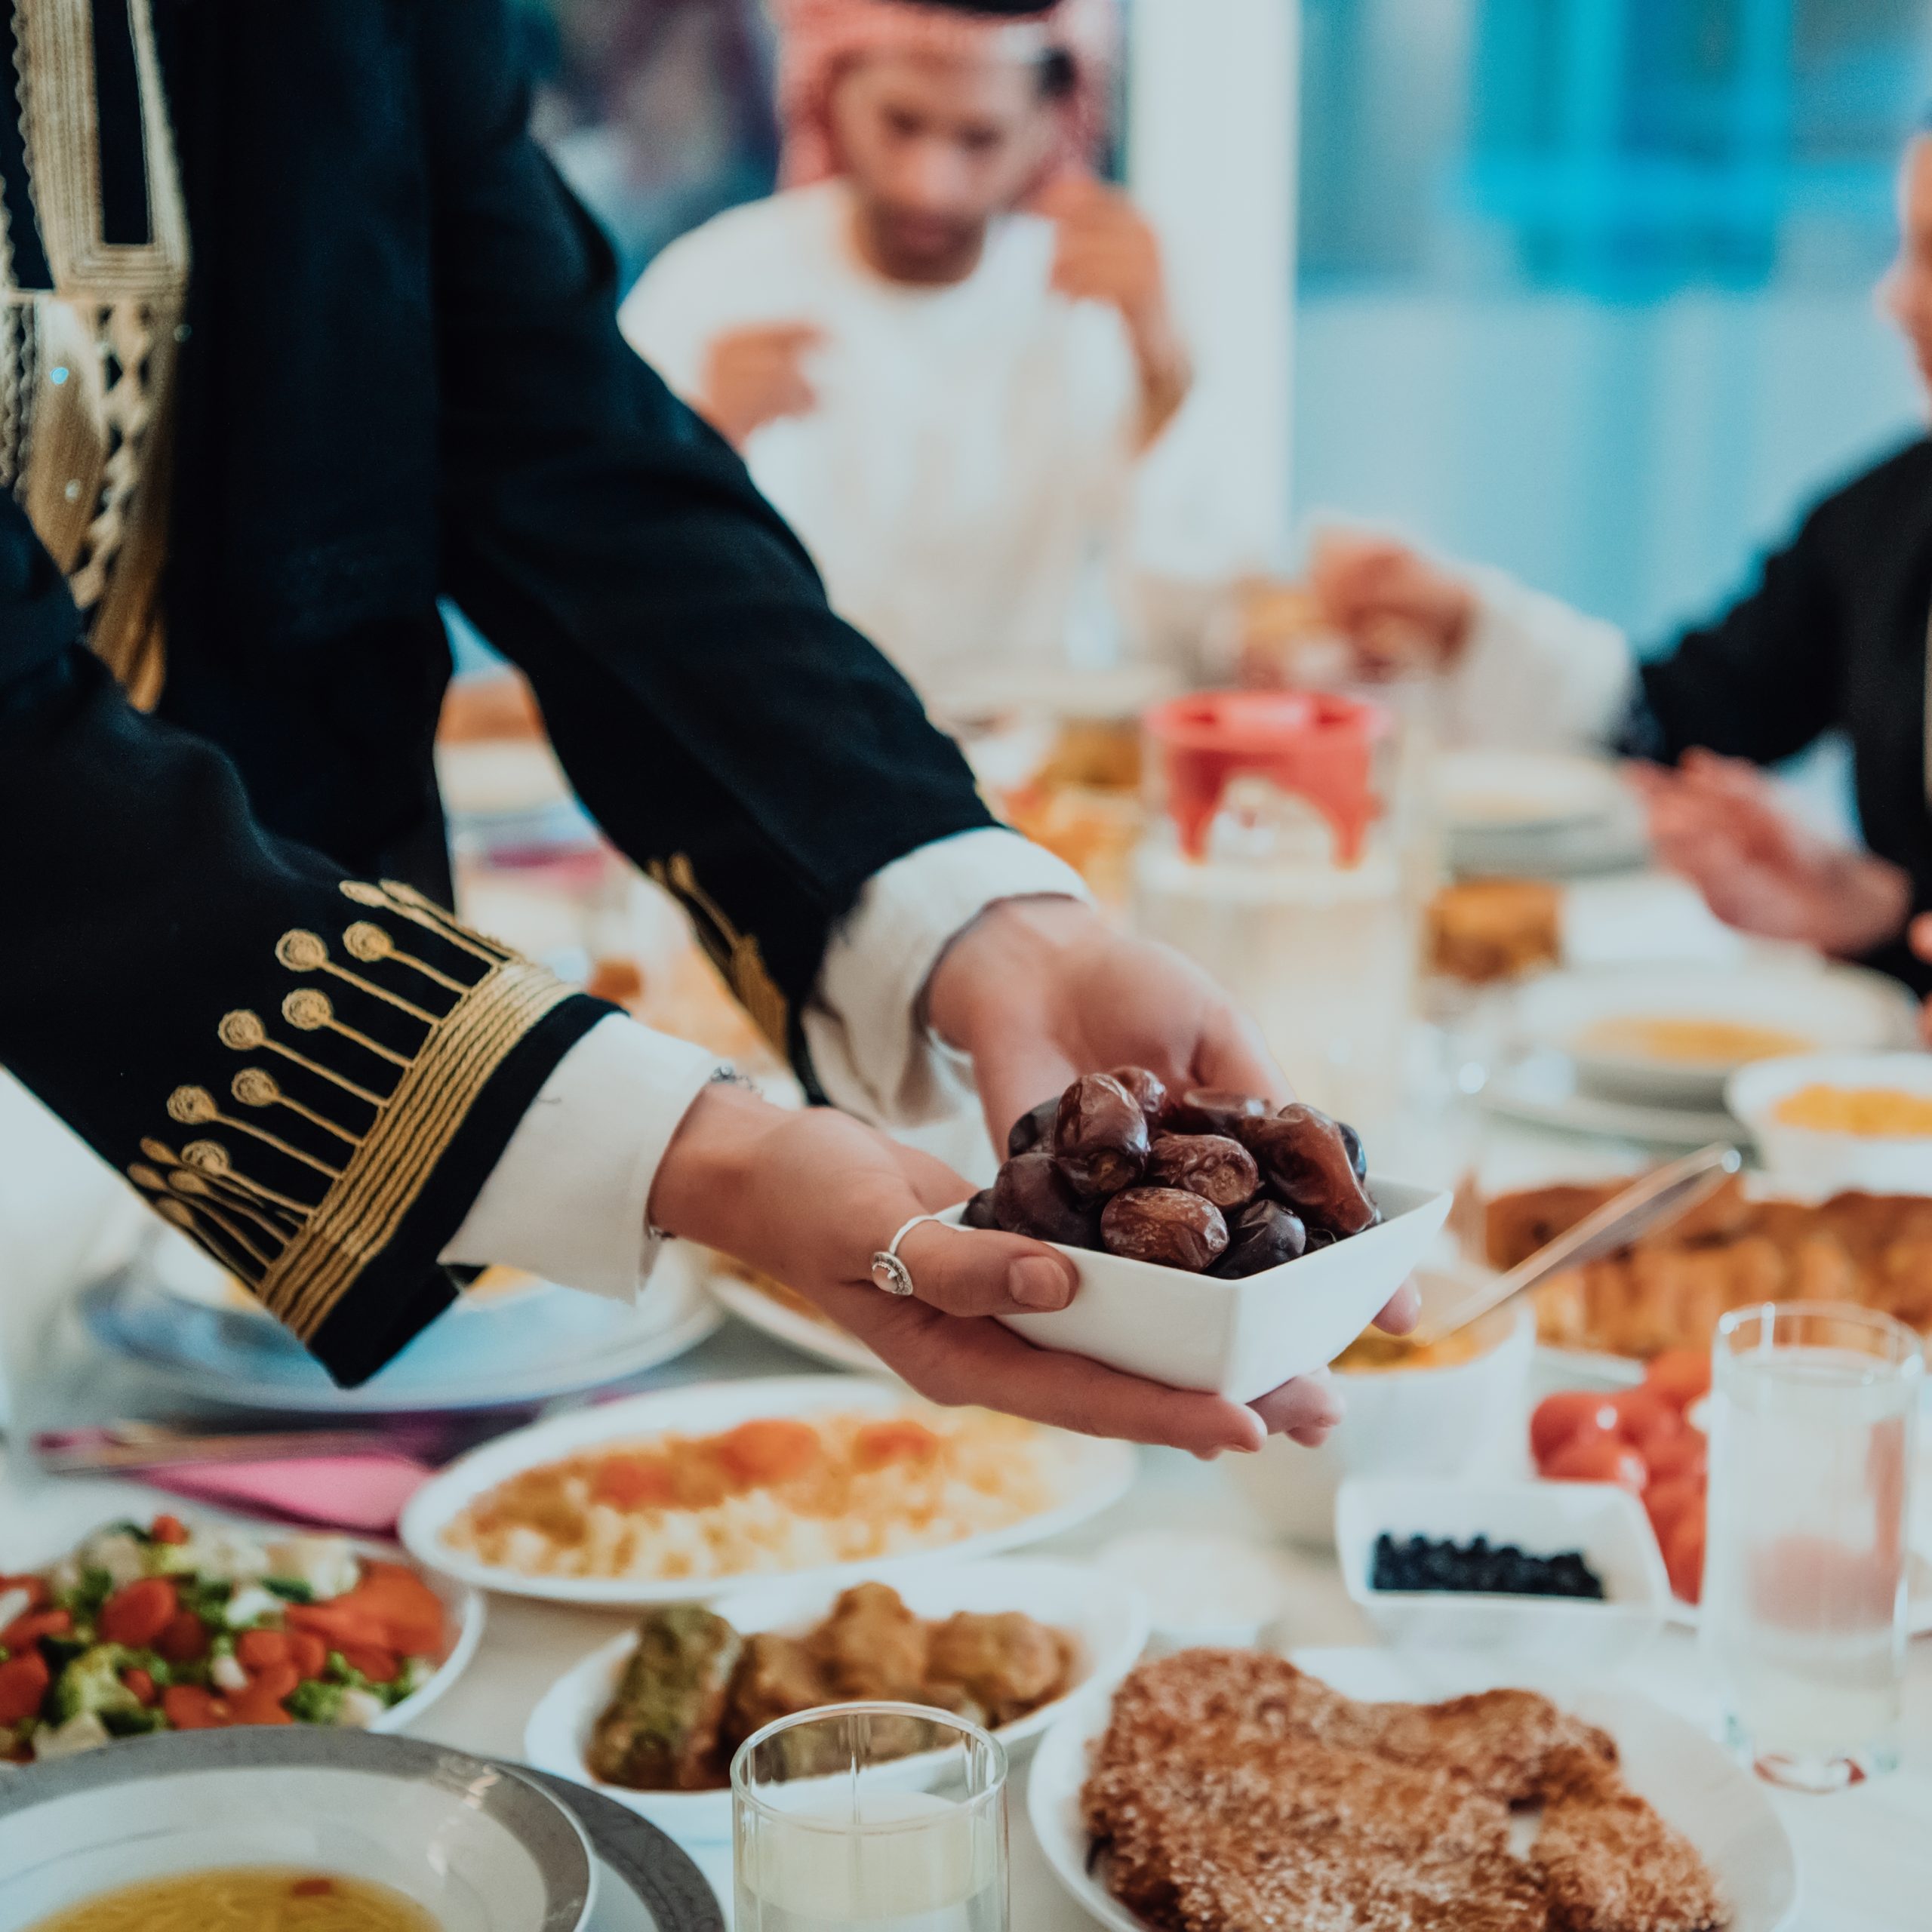 أفضل المطاعم في مدينة الرياض بنوعية الطعام المقدم